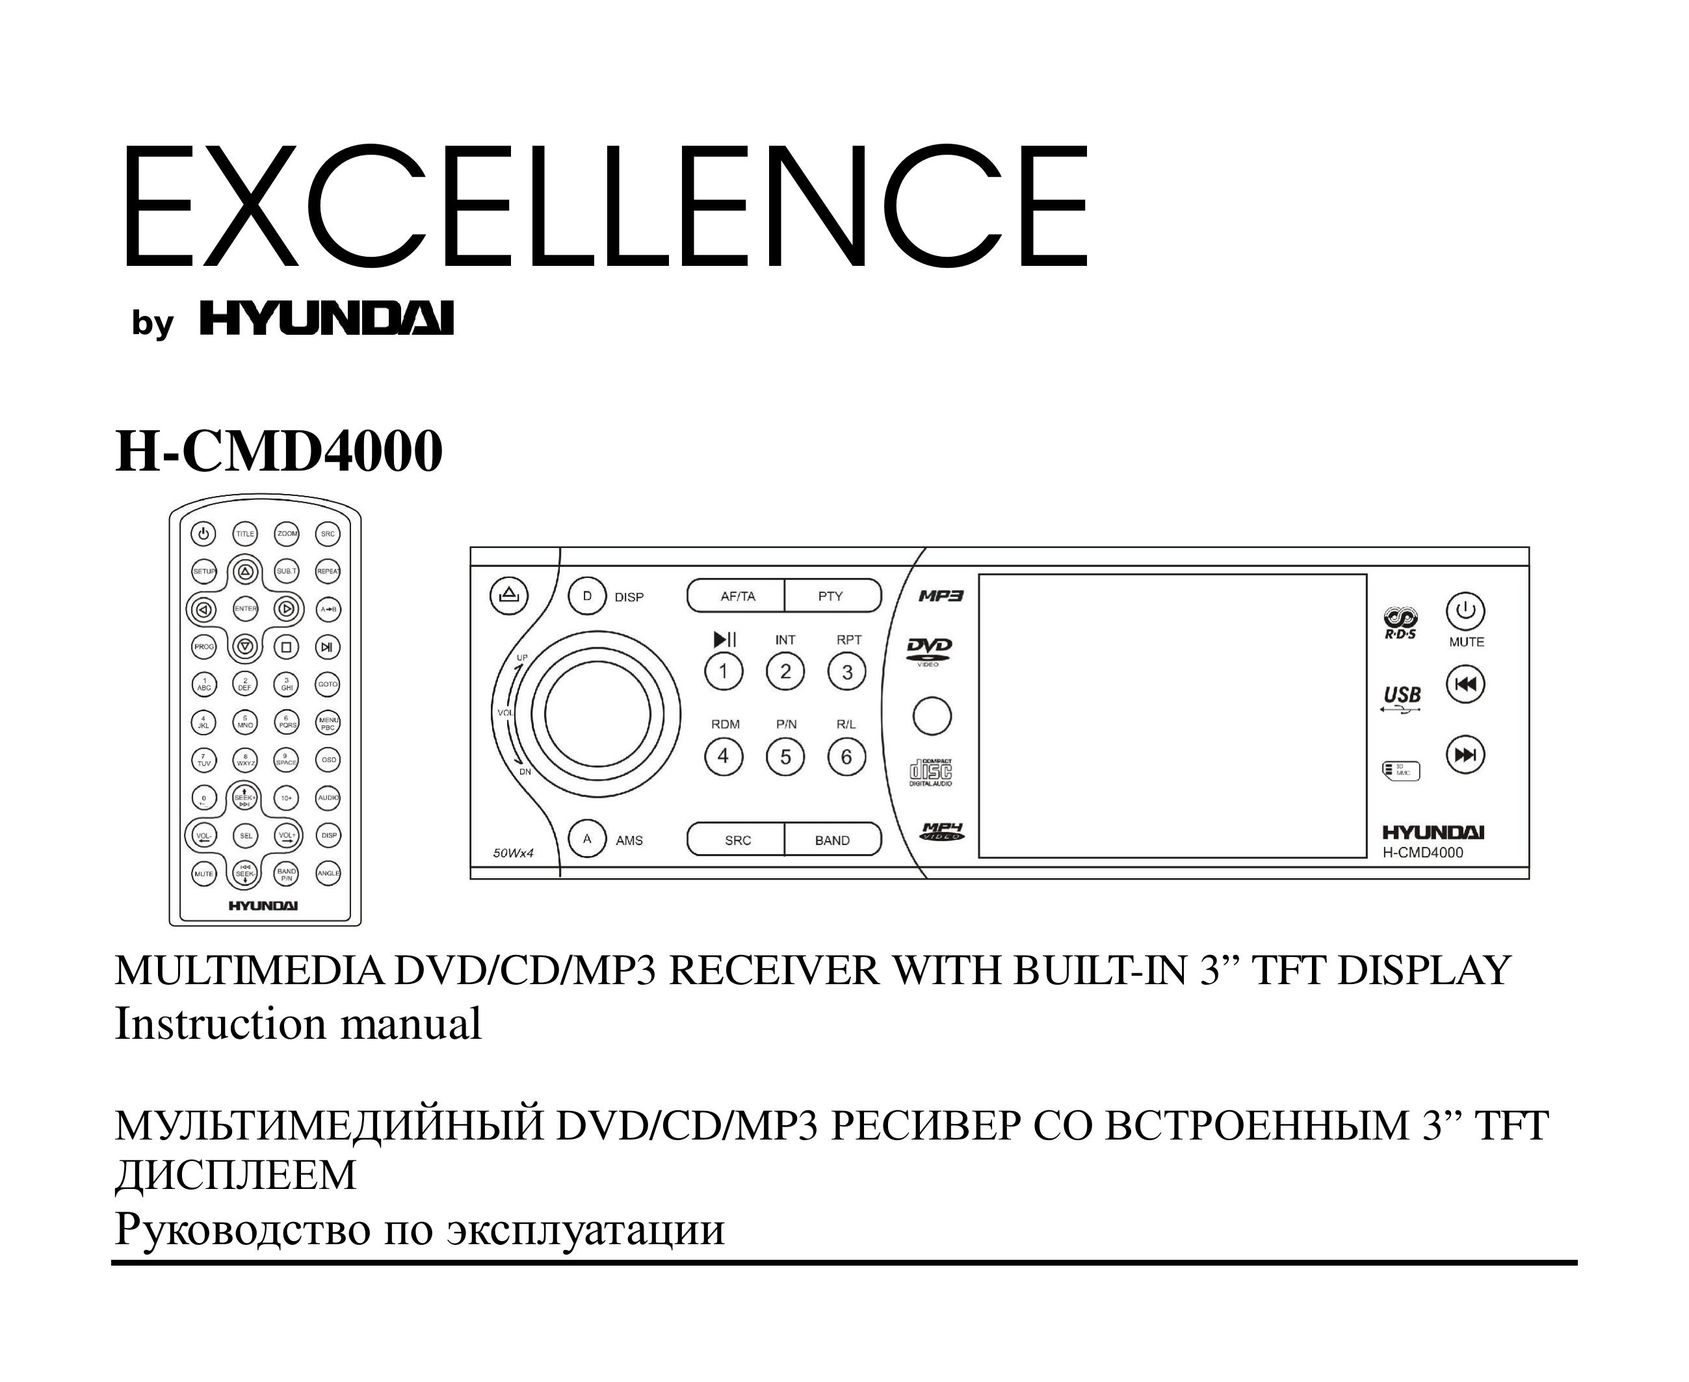 Hyundai H-CMD4000 DVD Recorder User Manual